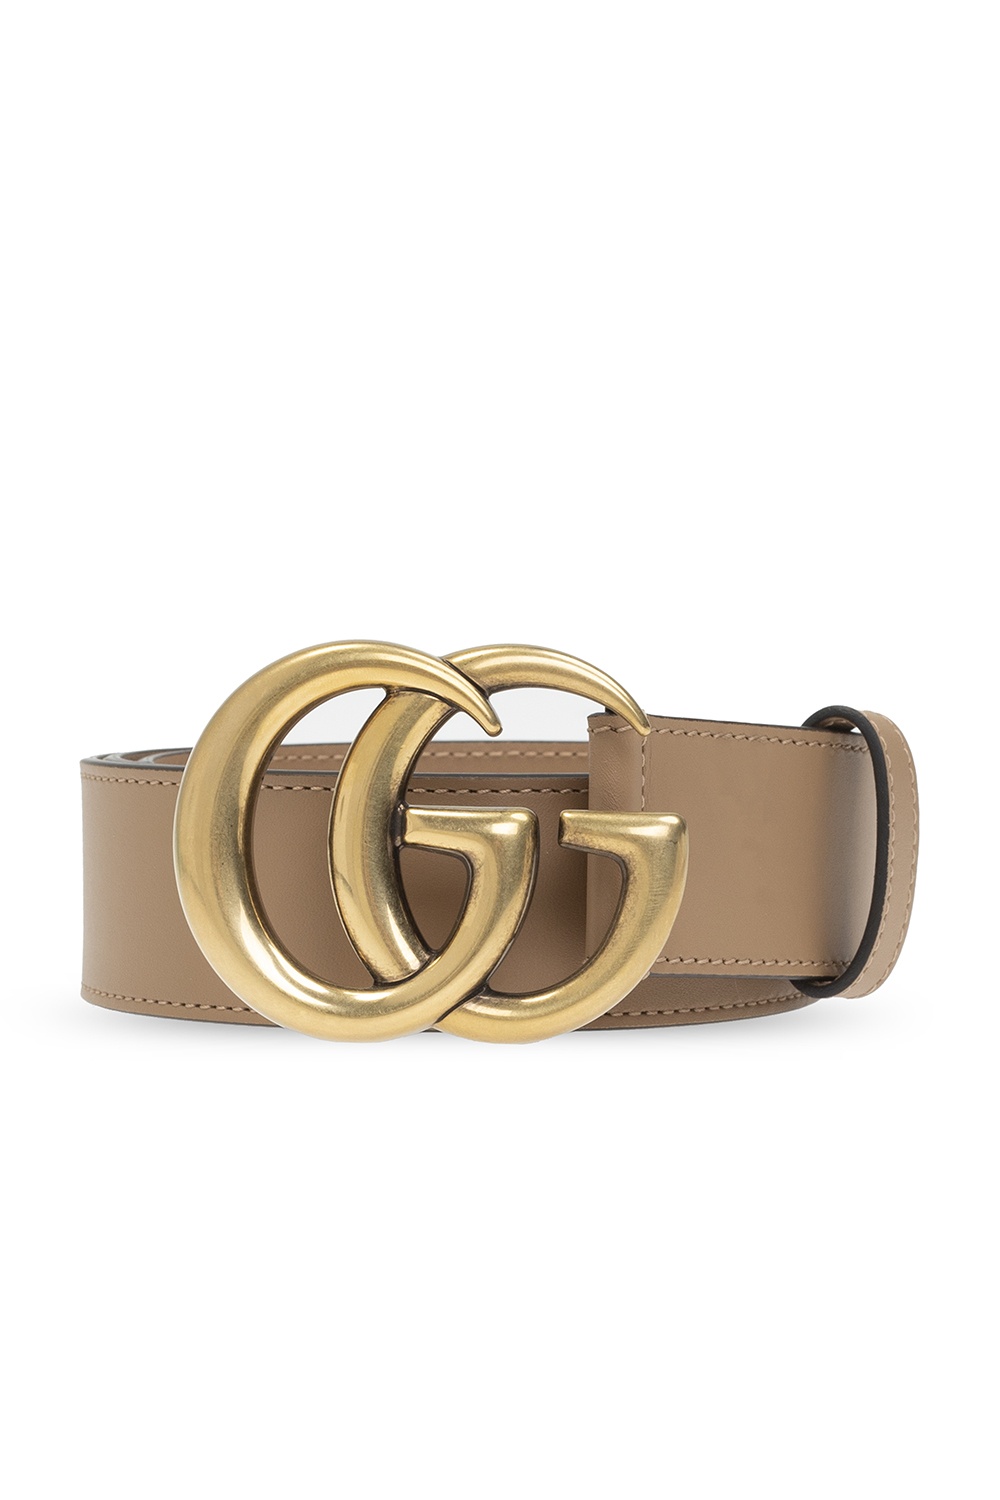 gucci adjustable belt